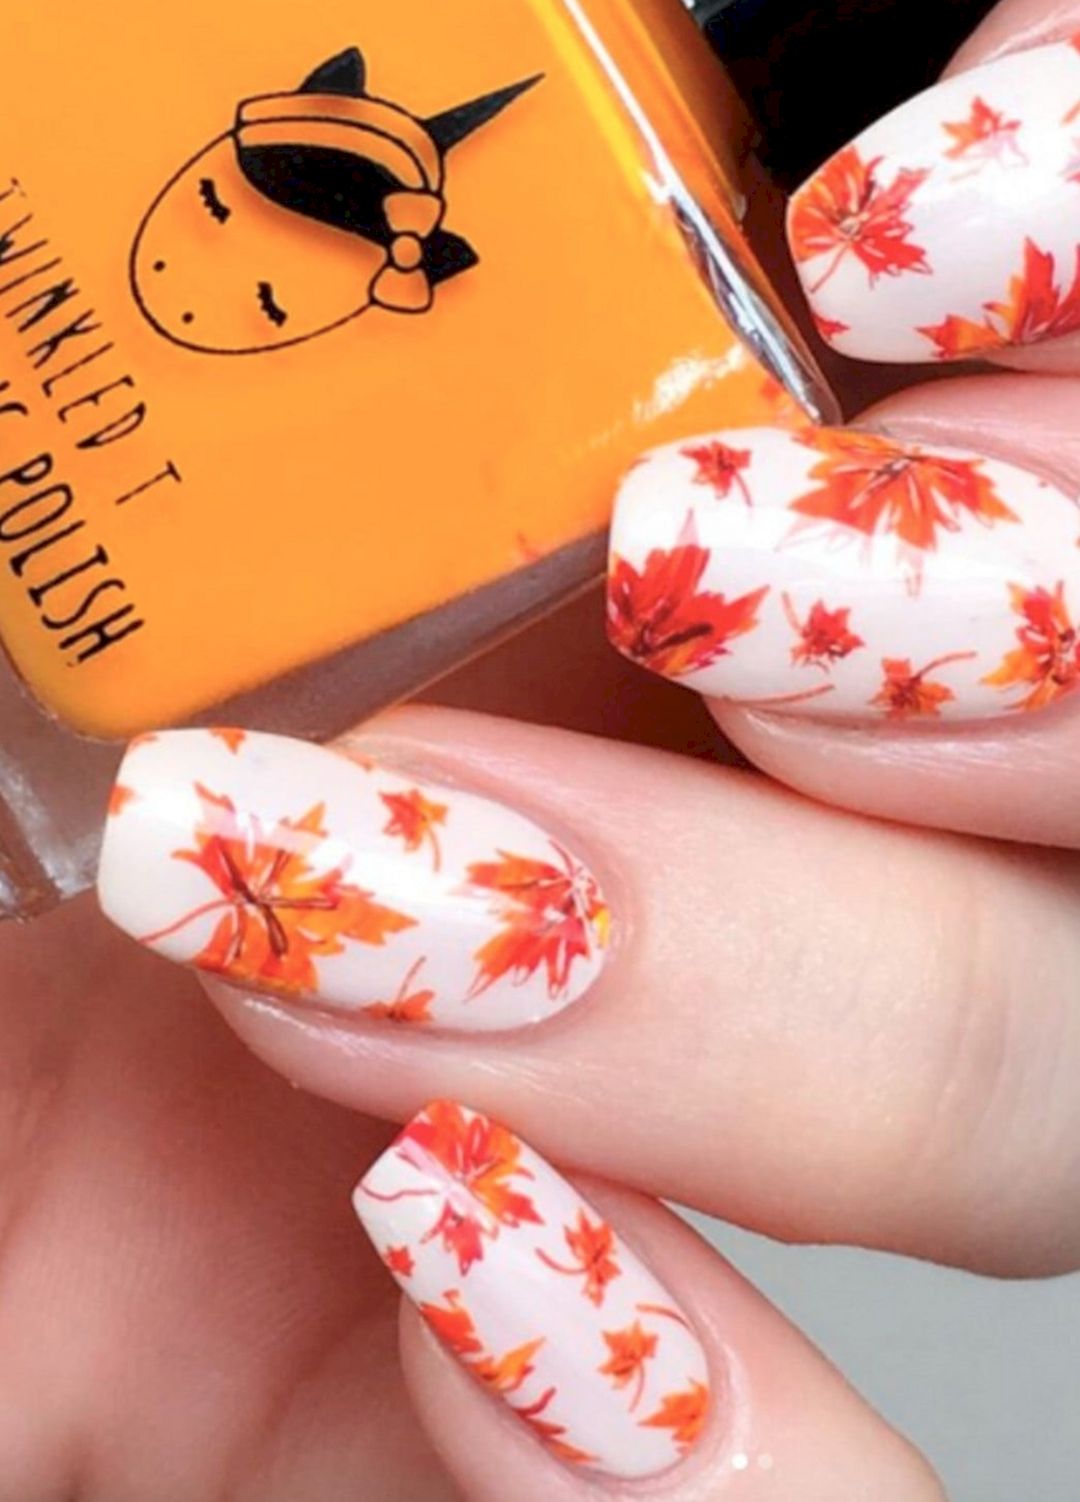 Autumn nail art from adablog